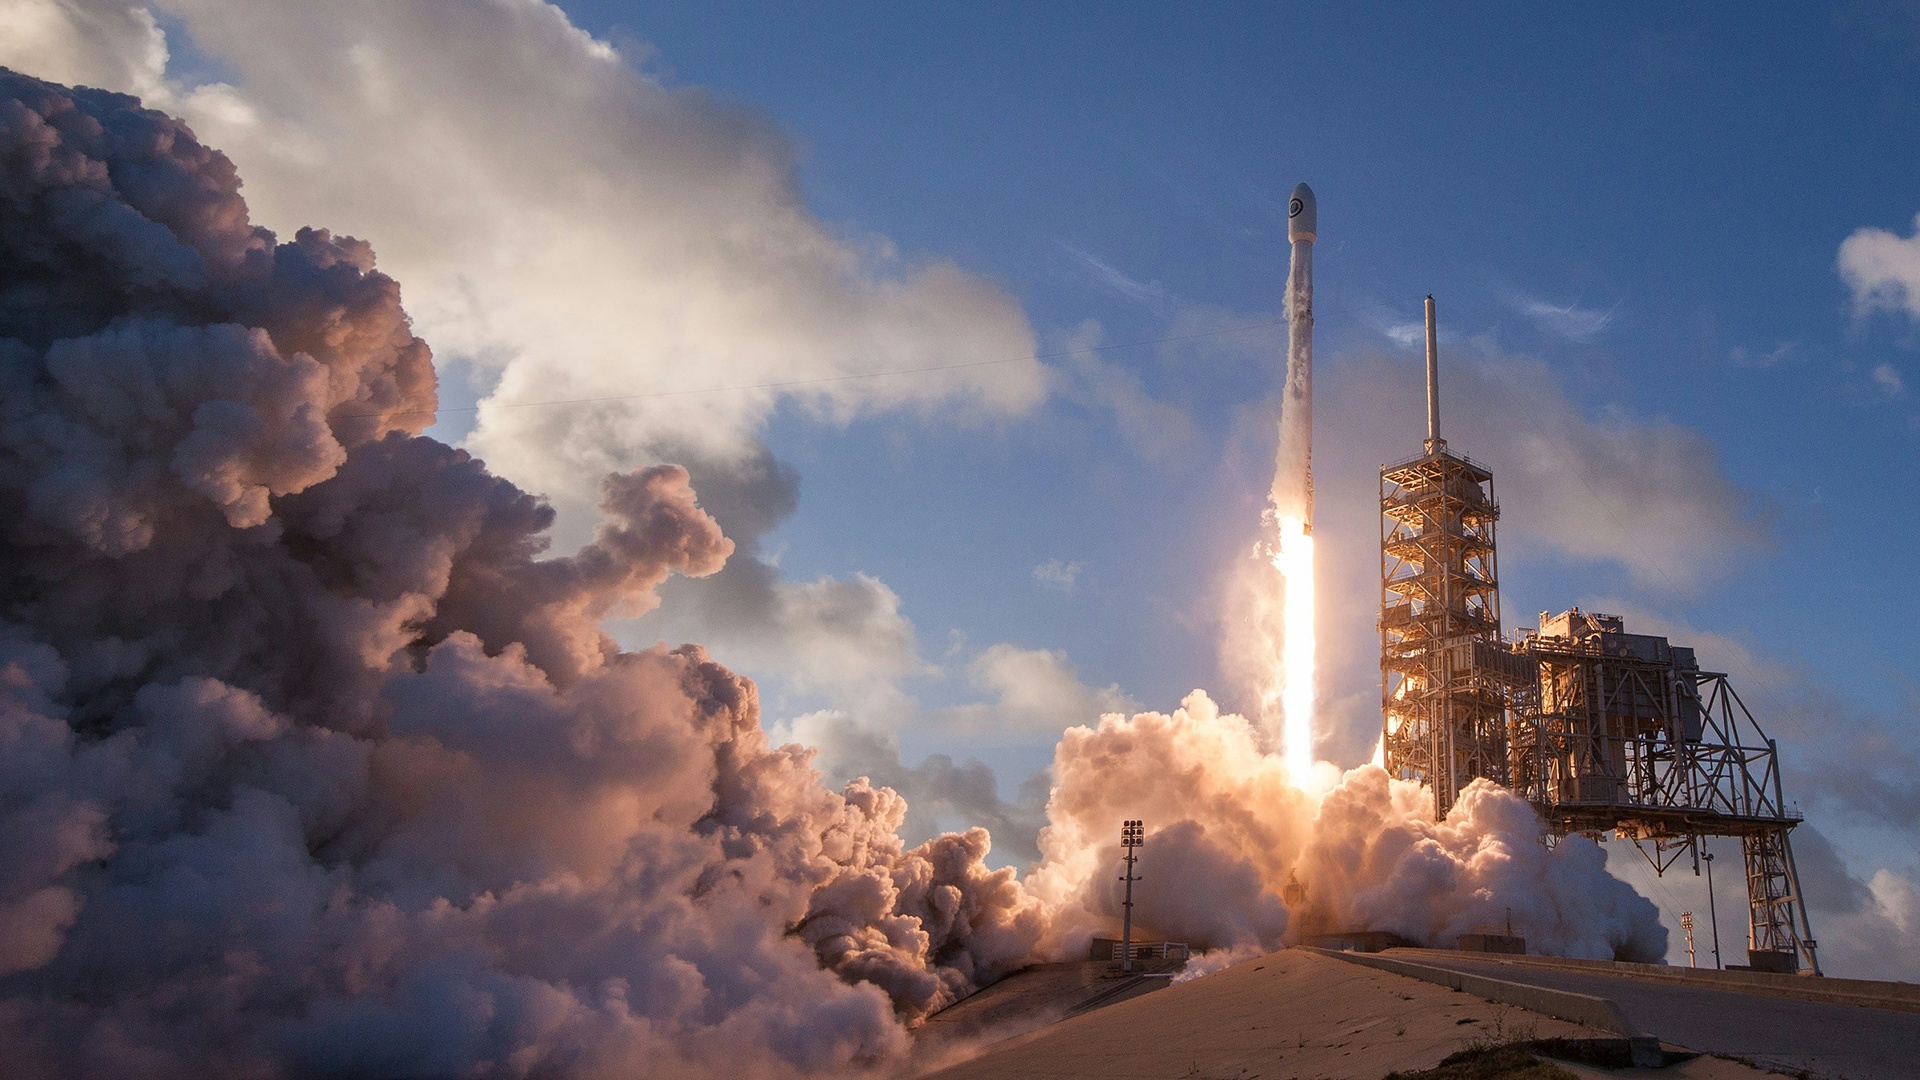 #Beeindruckendes Phänomen hat ernsten Hintergrund: SpaceX-Aurora ist eigentlich ein Atmosphärenloch – verursacht durch eine Rakete